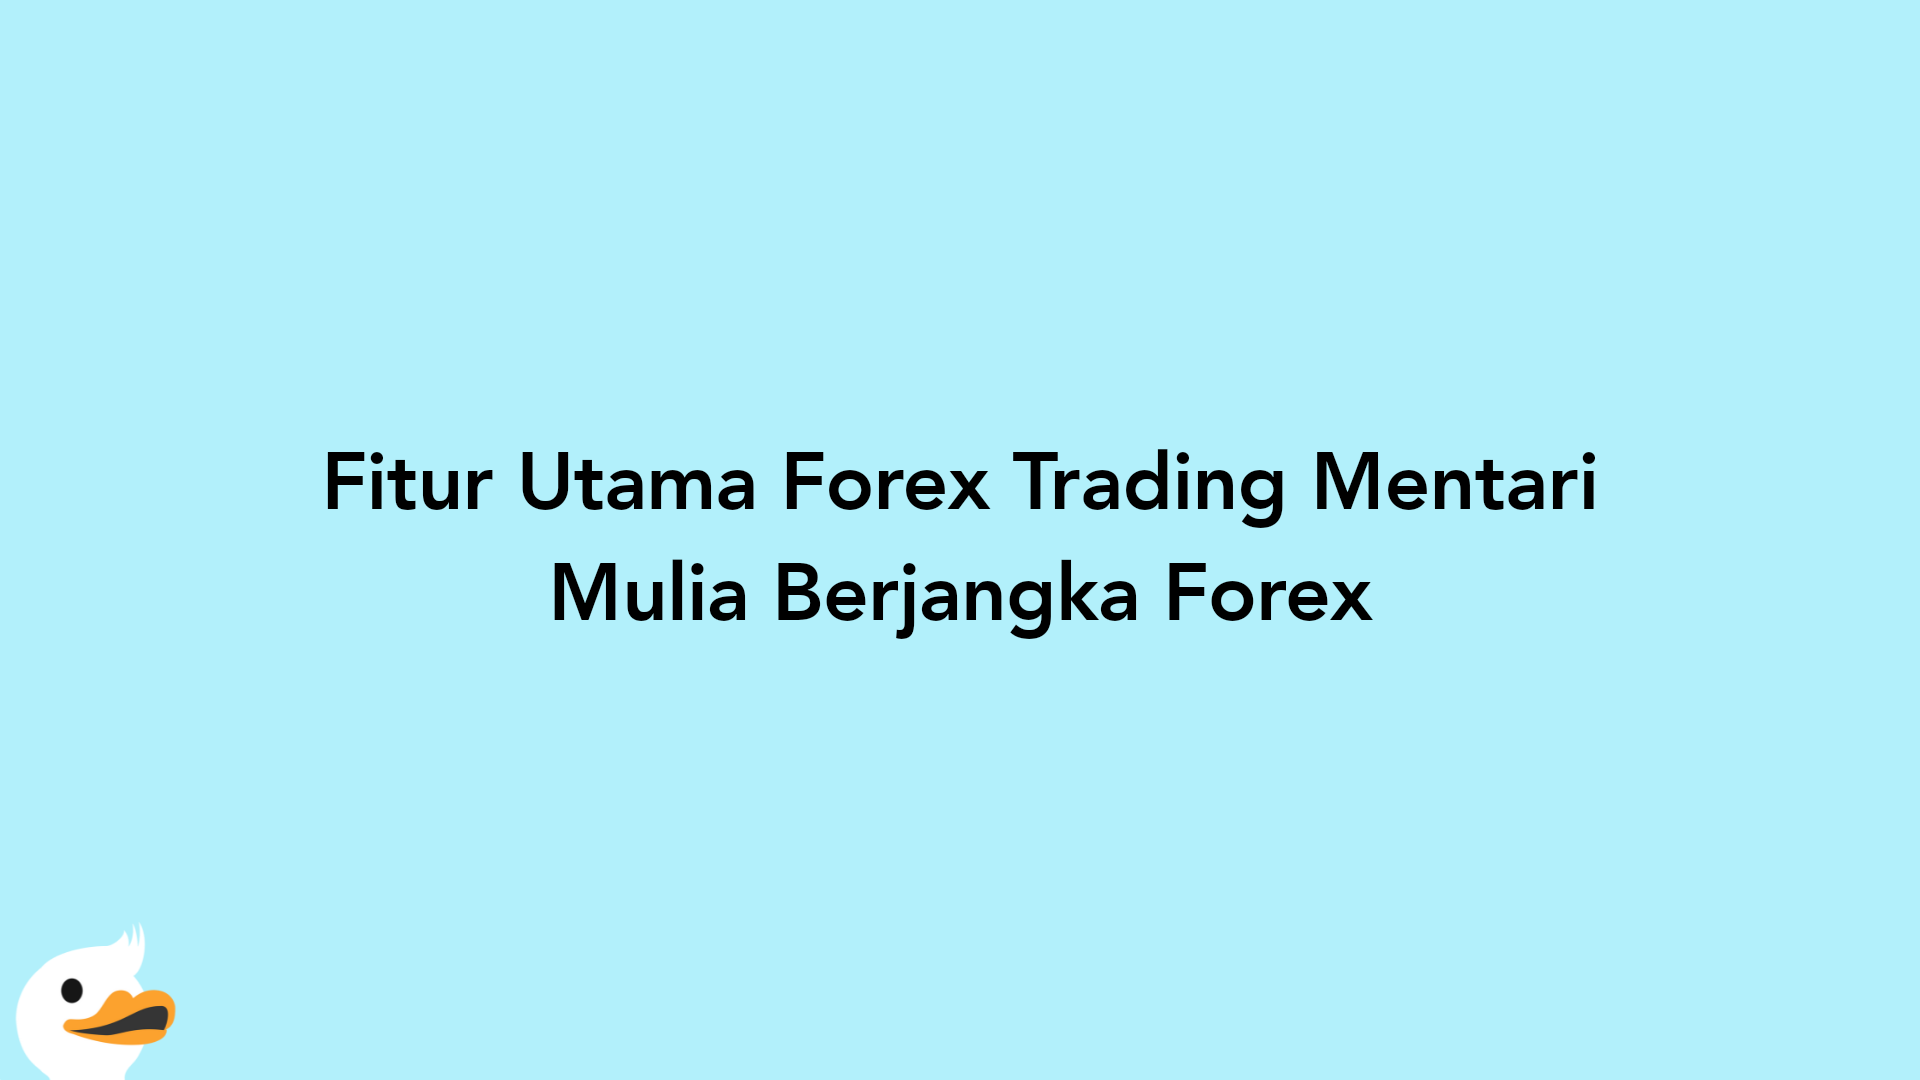 Fitur Utama Forex Trading Mentari Mulia Berjangka Forex